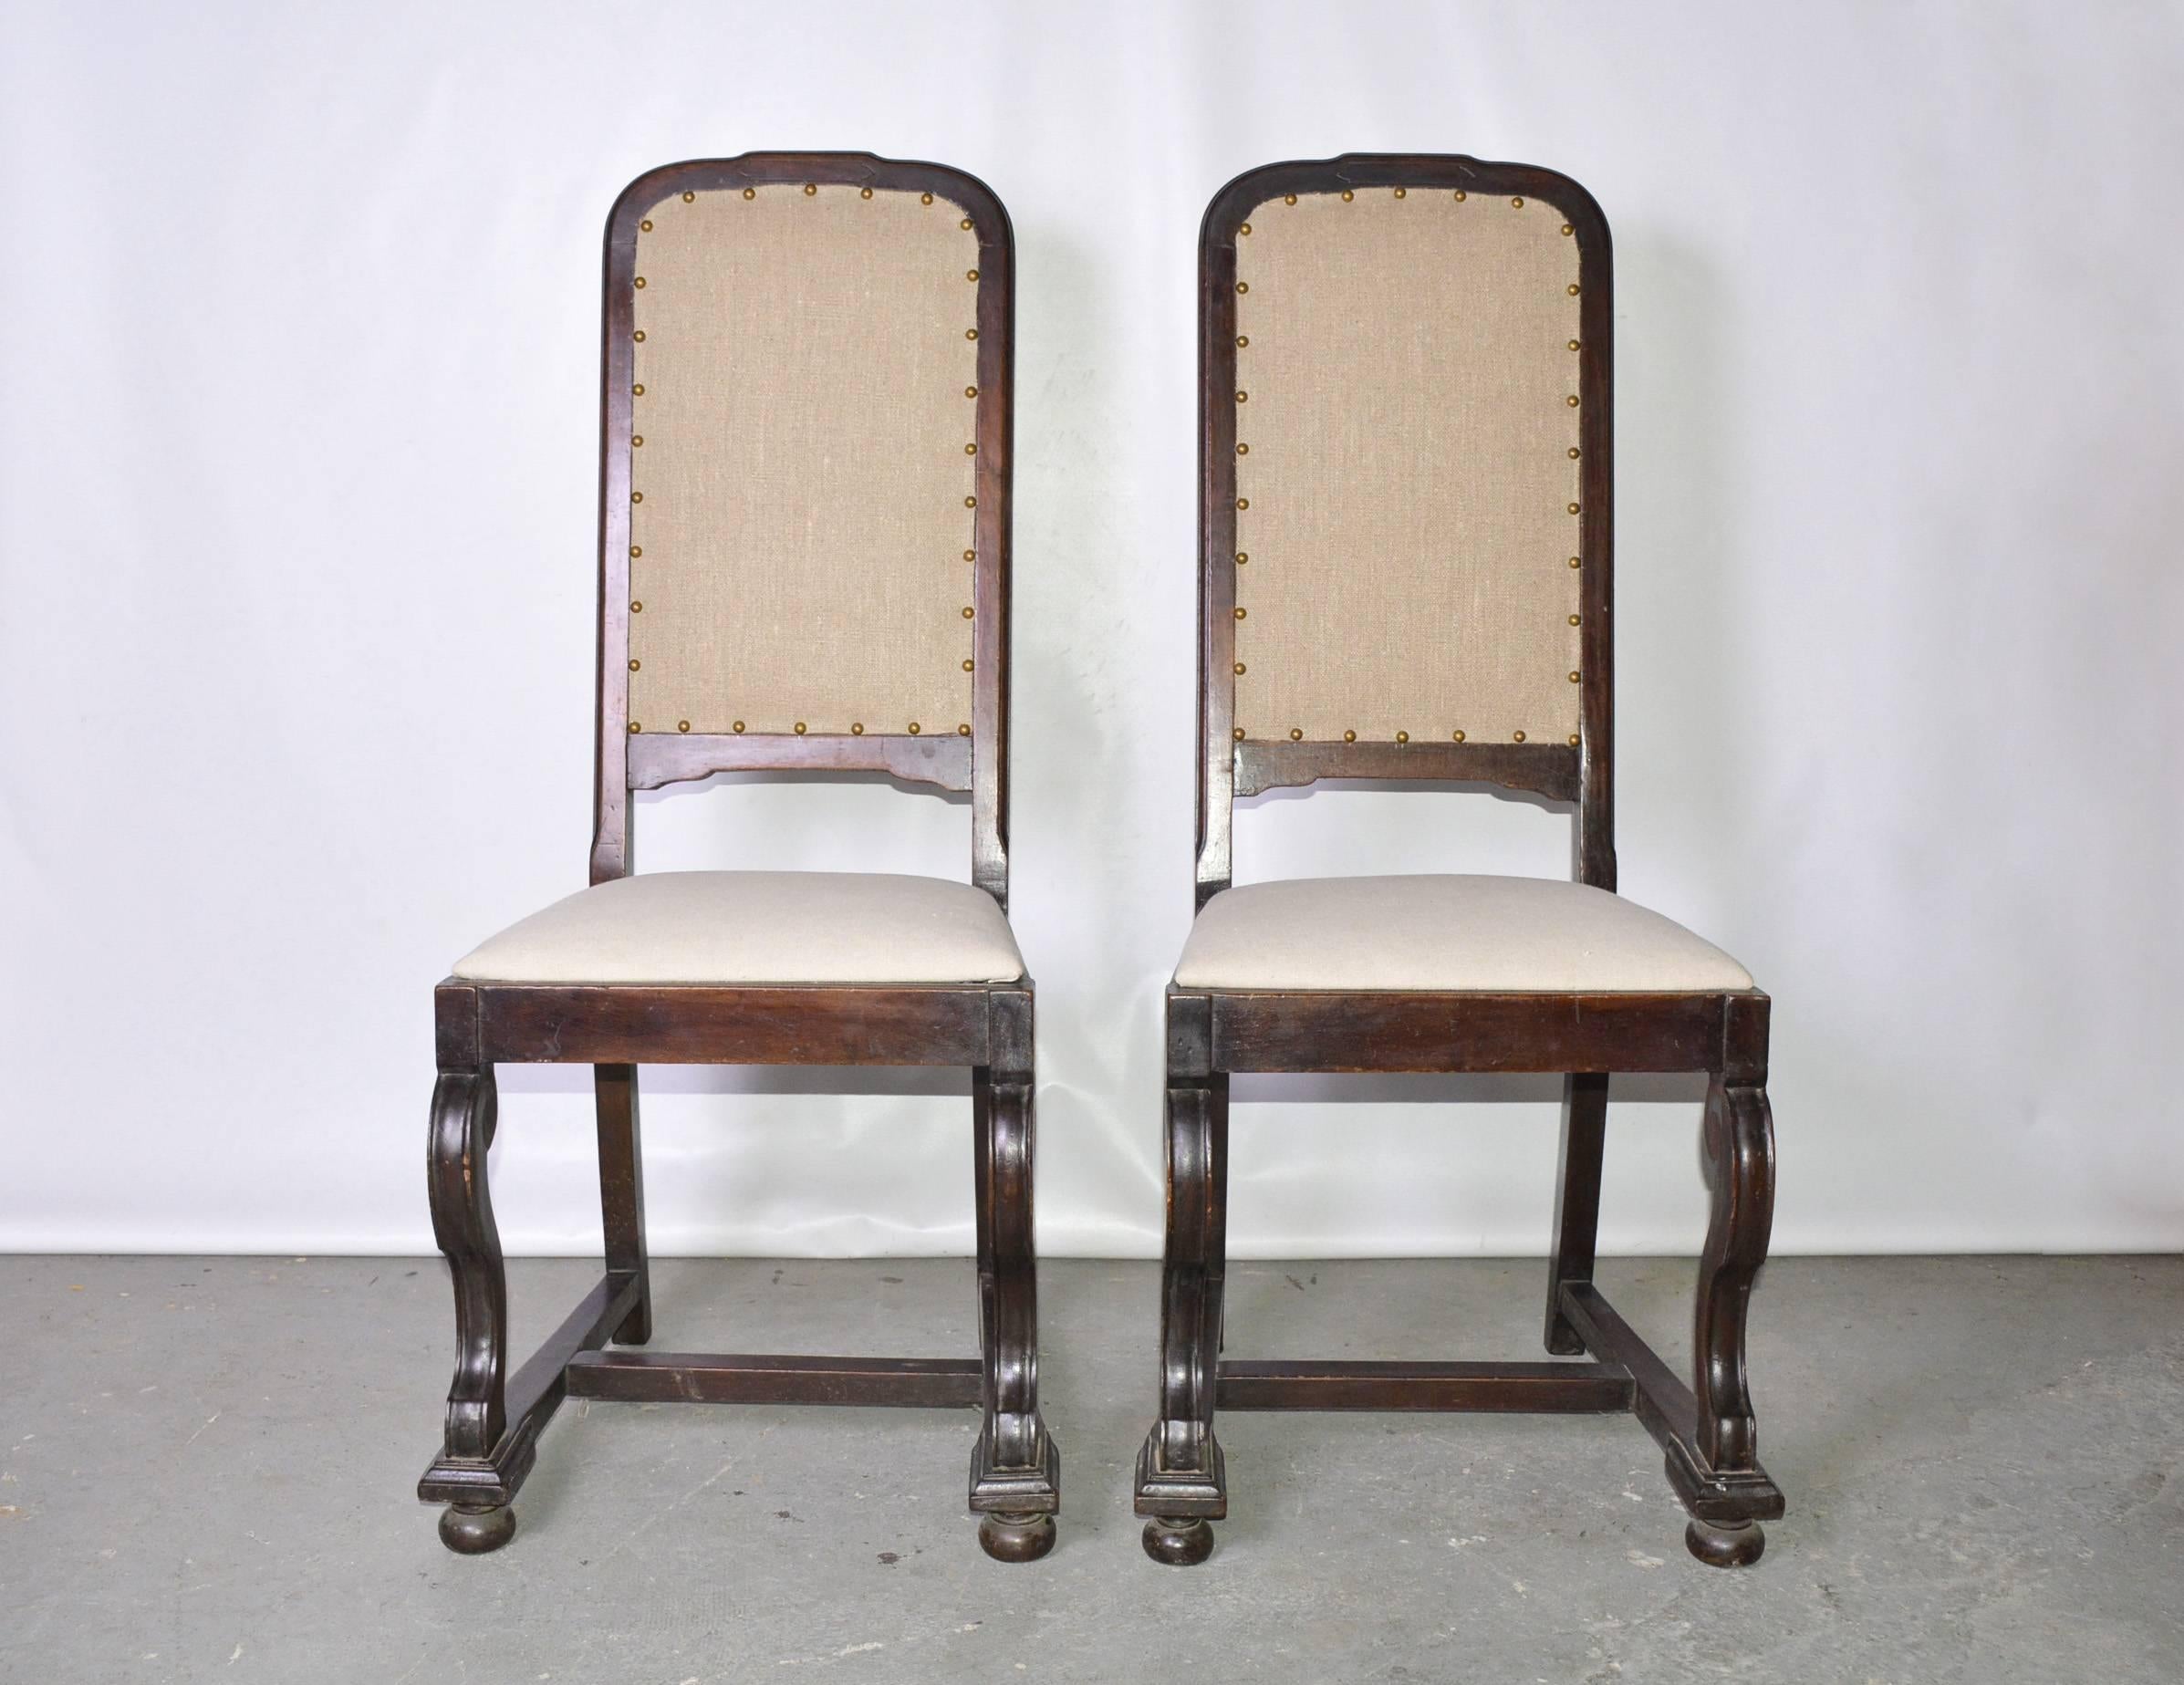 Das Paar antiker Mahagoni-Seitenstühle im jakobinischen Stil ist neu mit beigefarbenem Leinen gepolstert, während die Sitze mit einem anderen beigefarbenen Leinen bezogen sind.